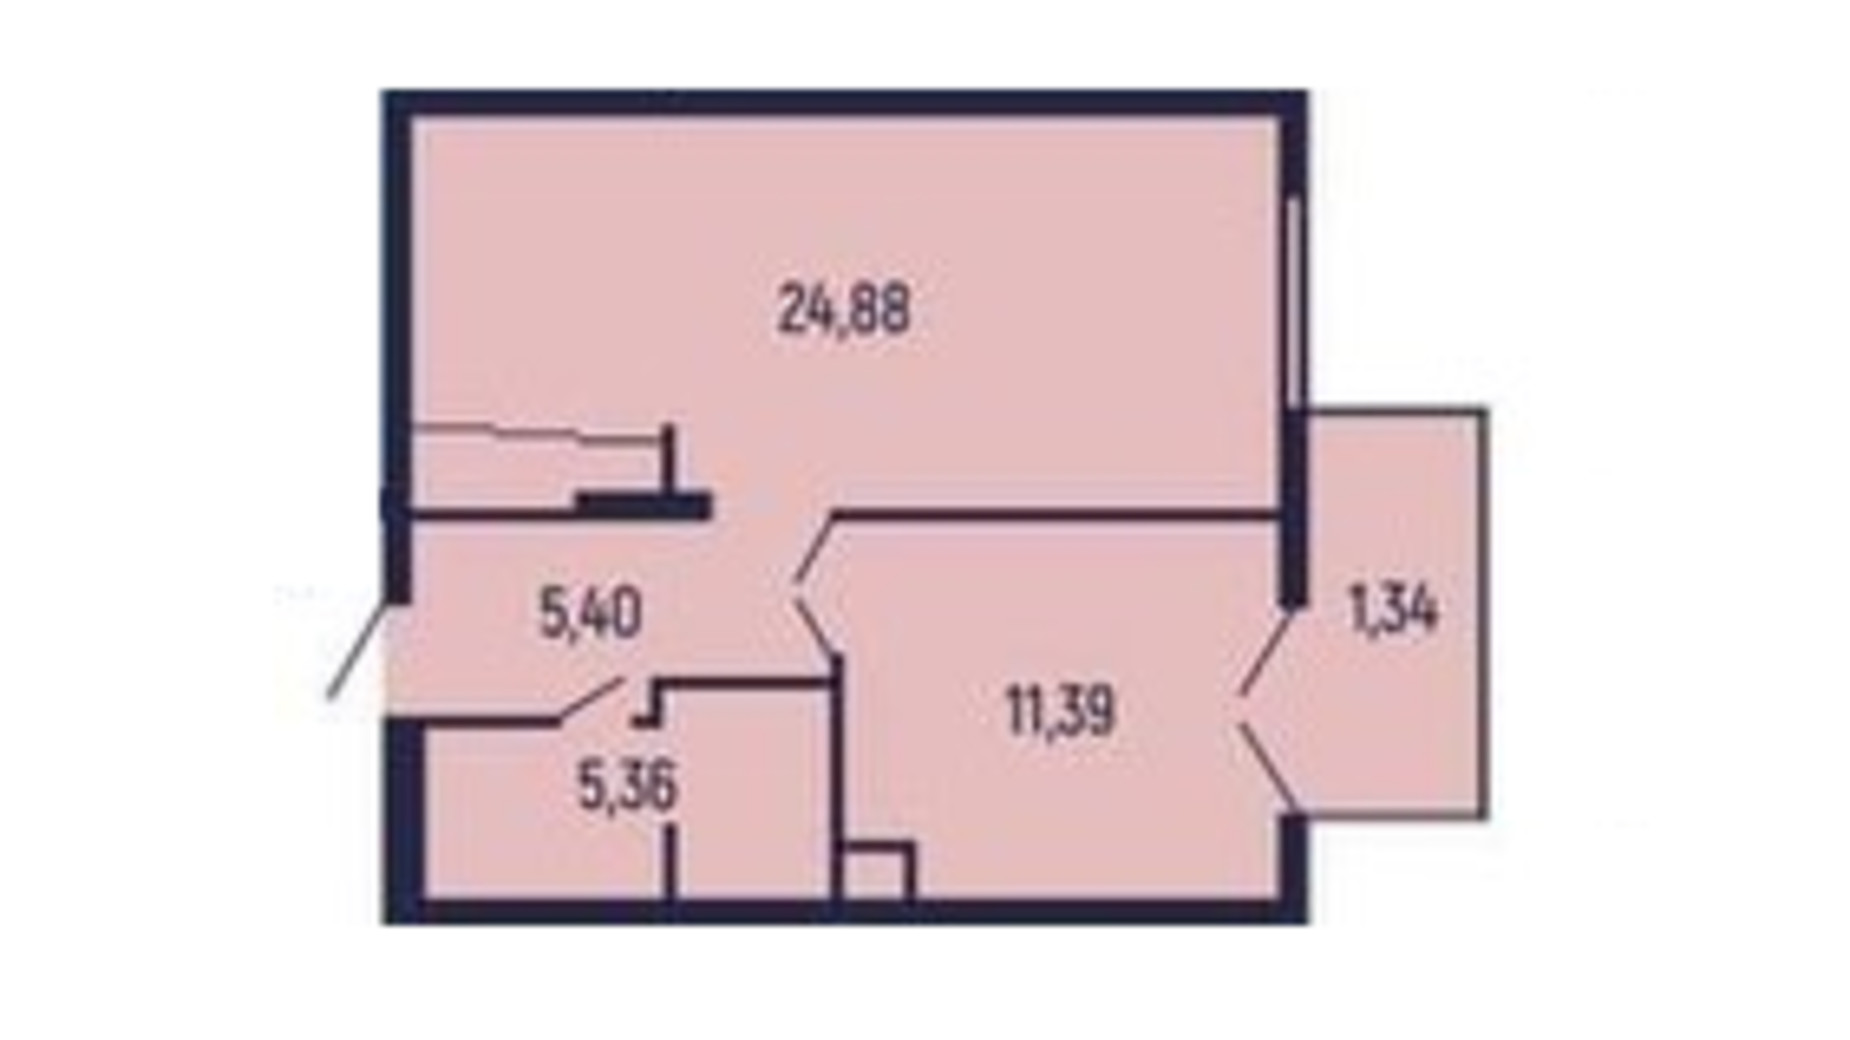 Планировка 1-комнатной квартиры в Квартал Royal Town 48.37 м², фото 602051